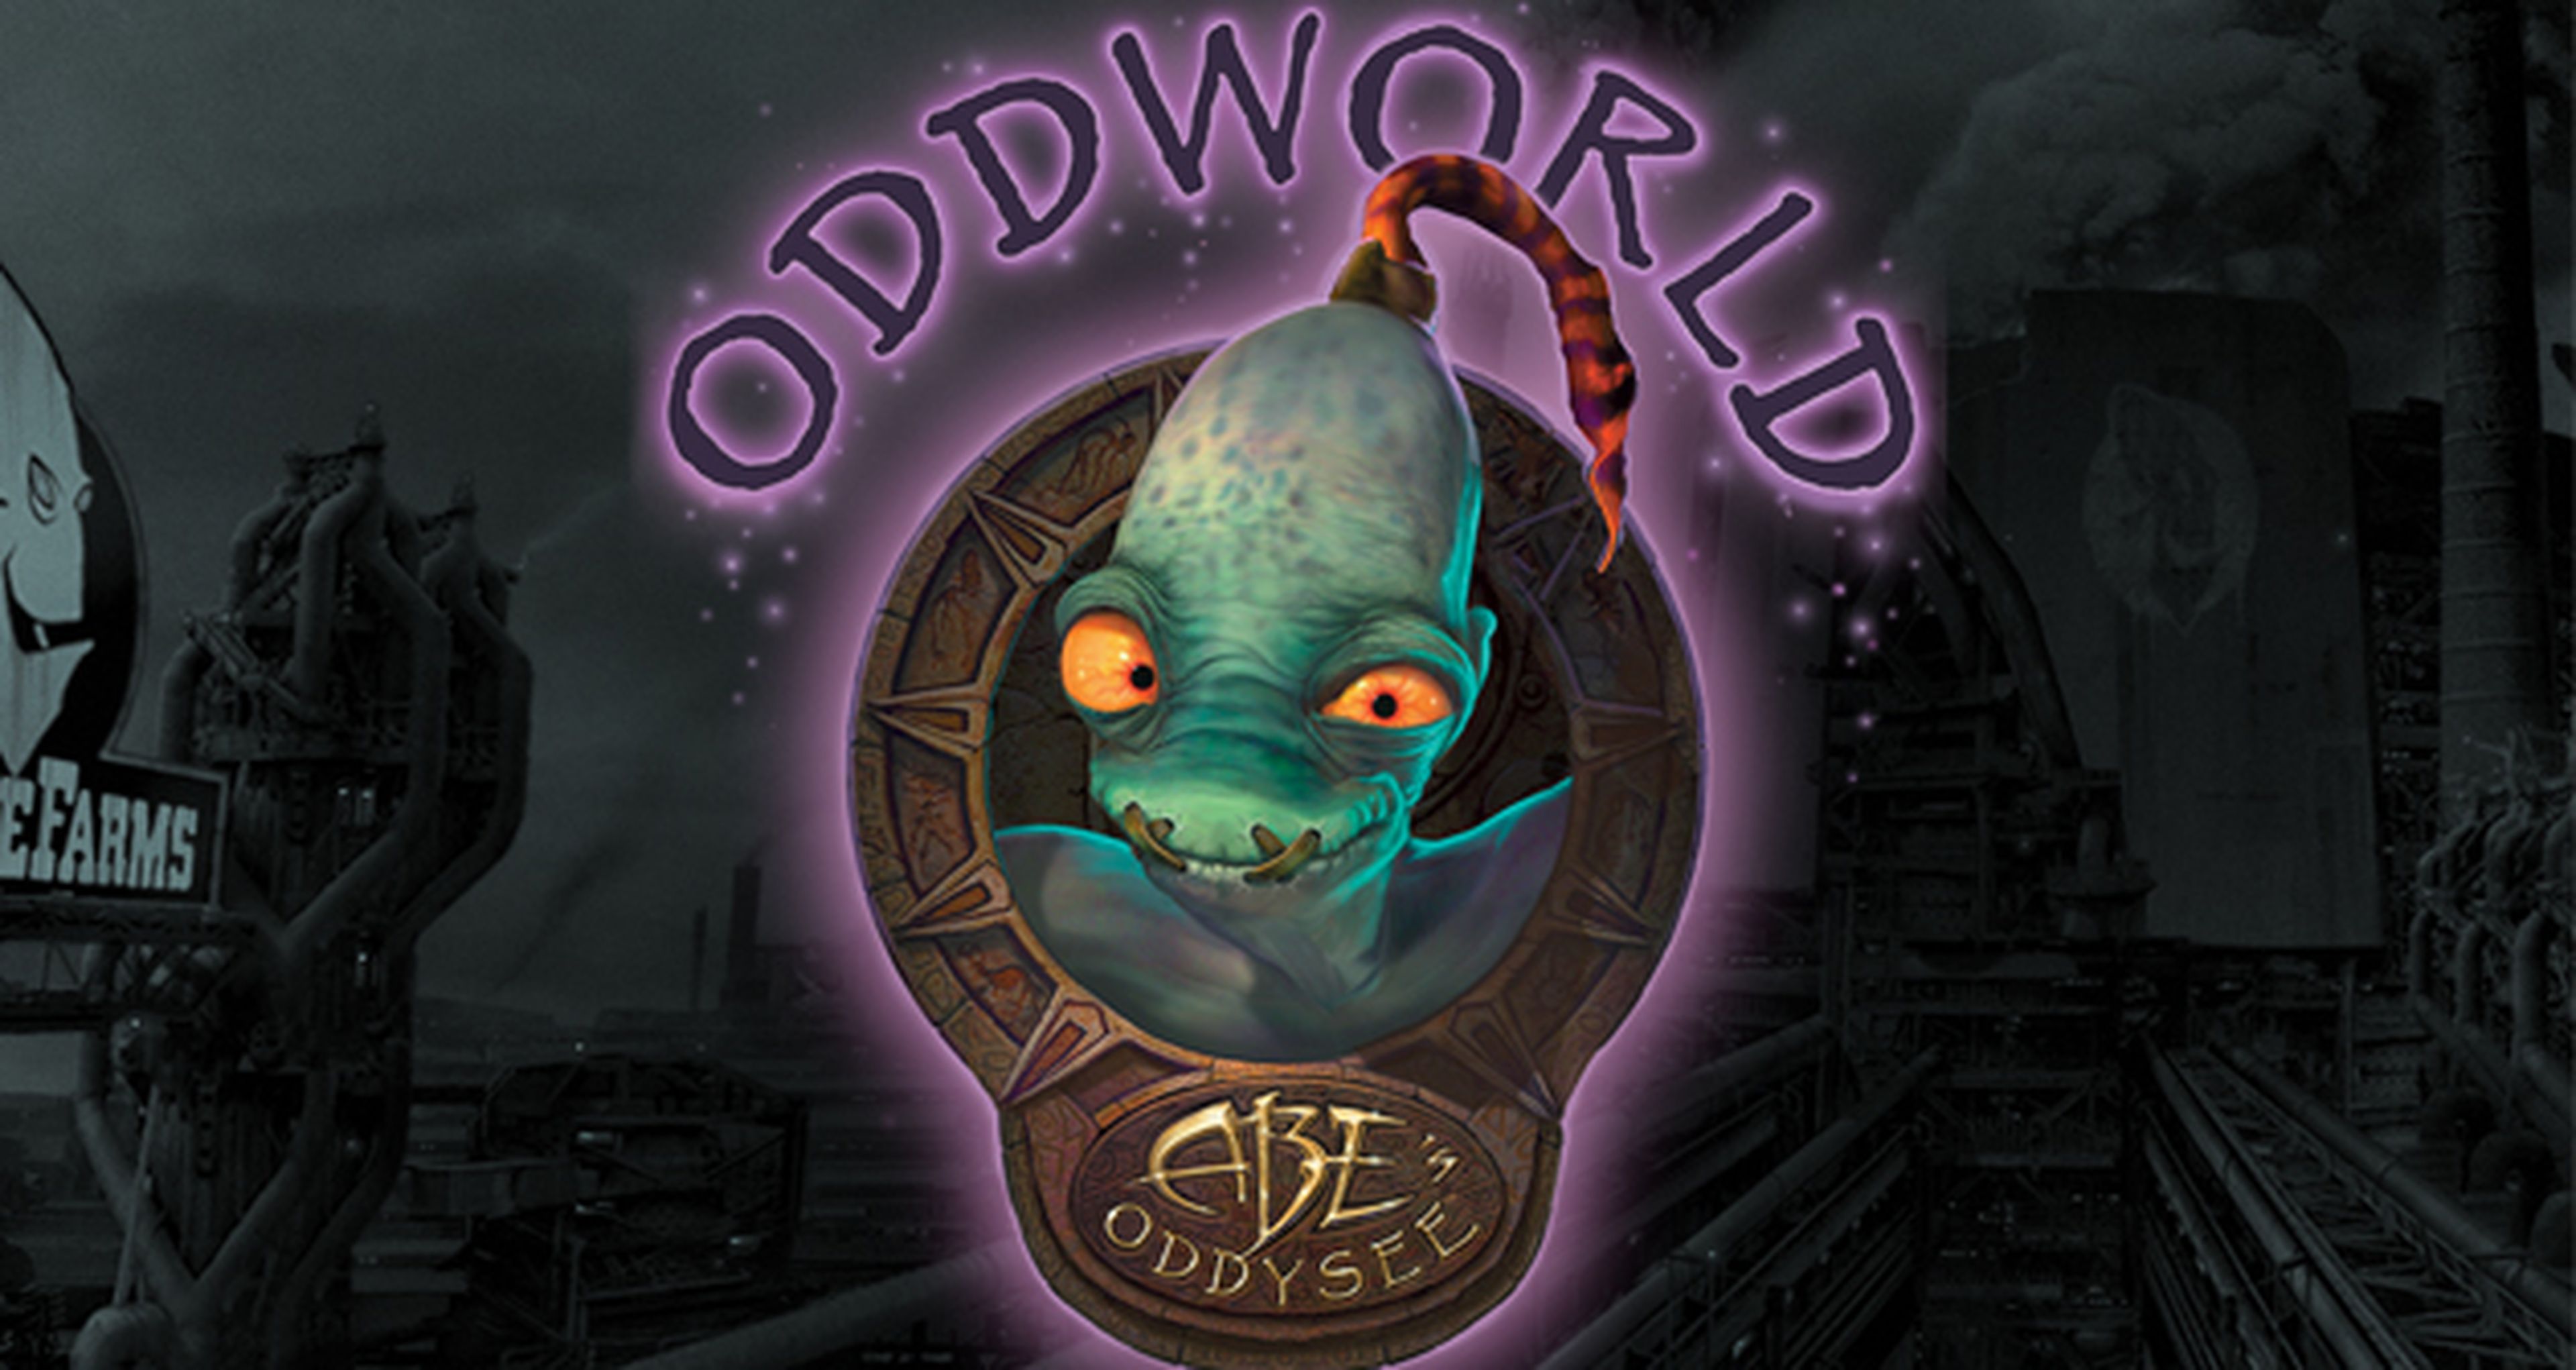 Oddworld new n tasty steam фото 114